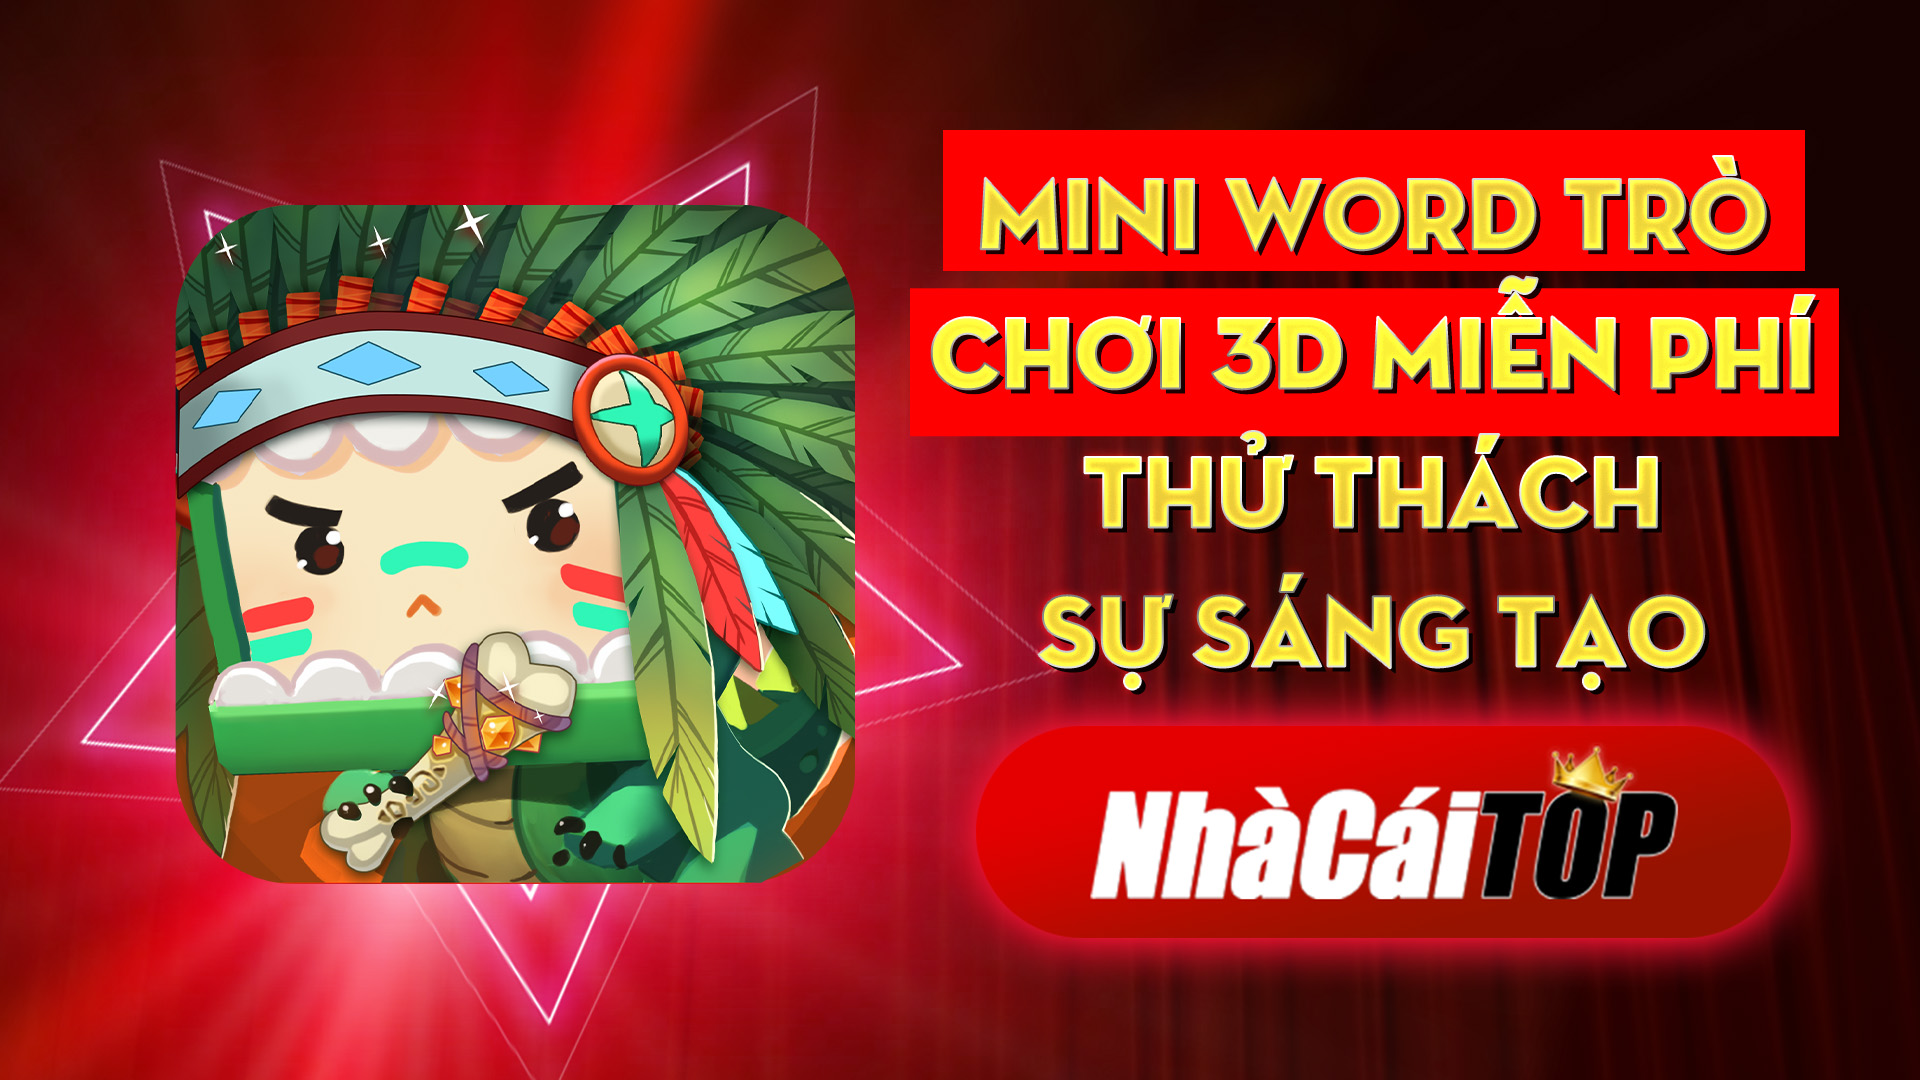 331 Mini Word – Tro Choi 3d Mien Phi Thu Thach Su Sang Tao